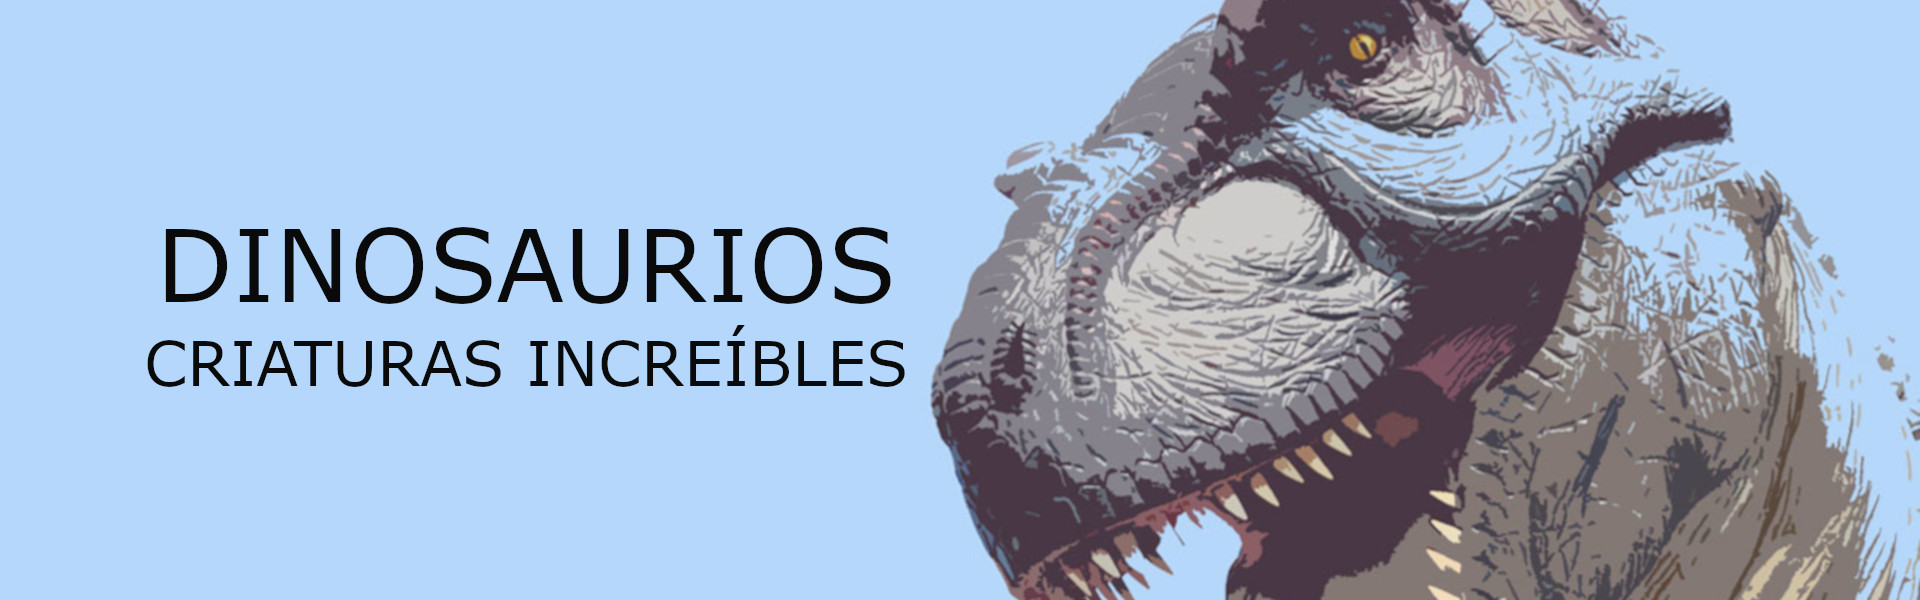 Dinosaurios - Origens / Orígenes